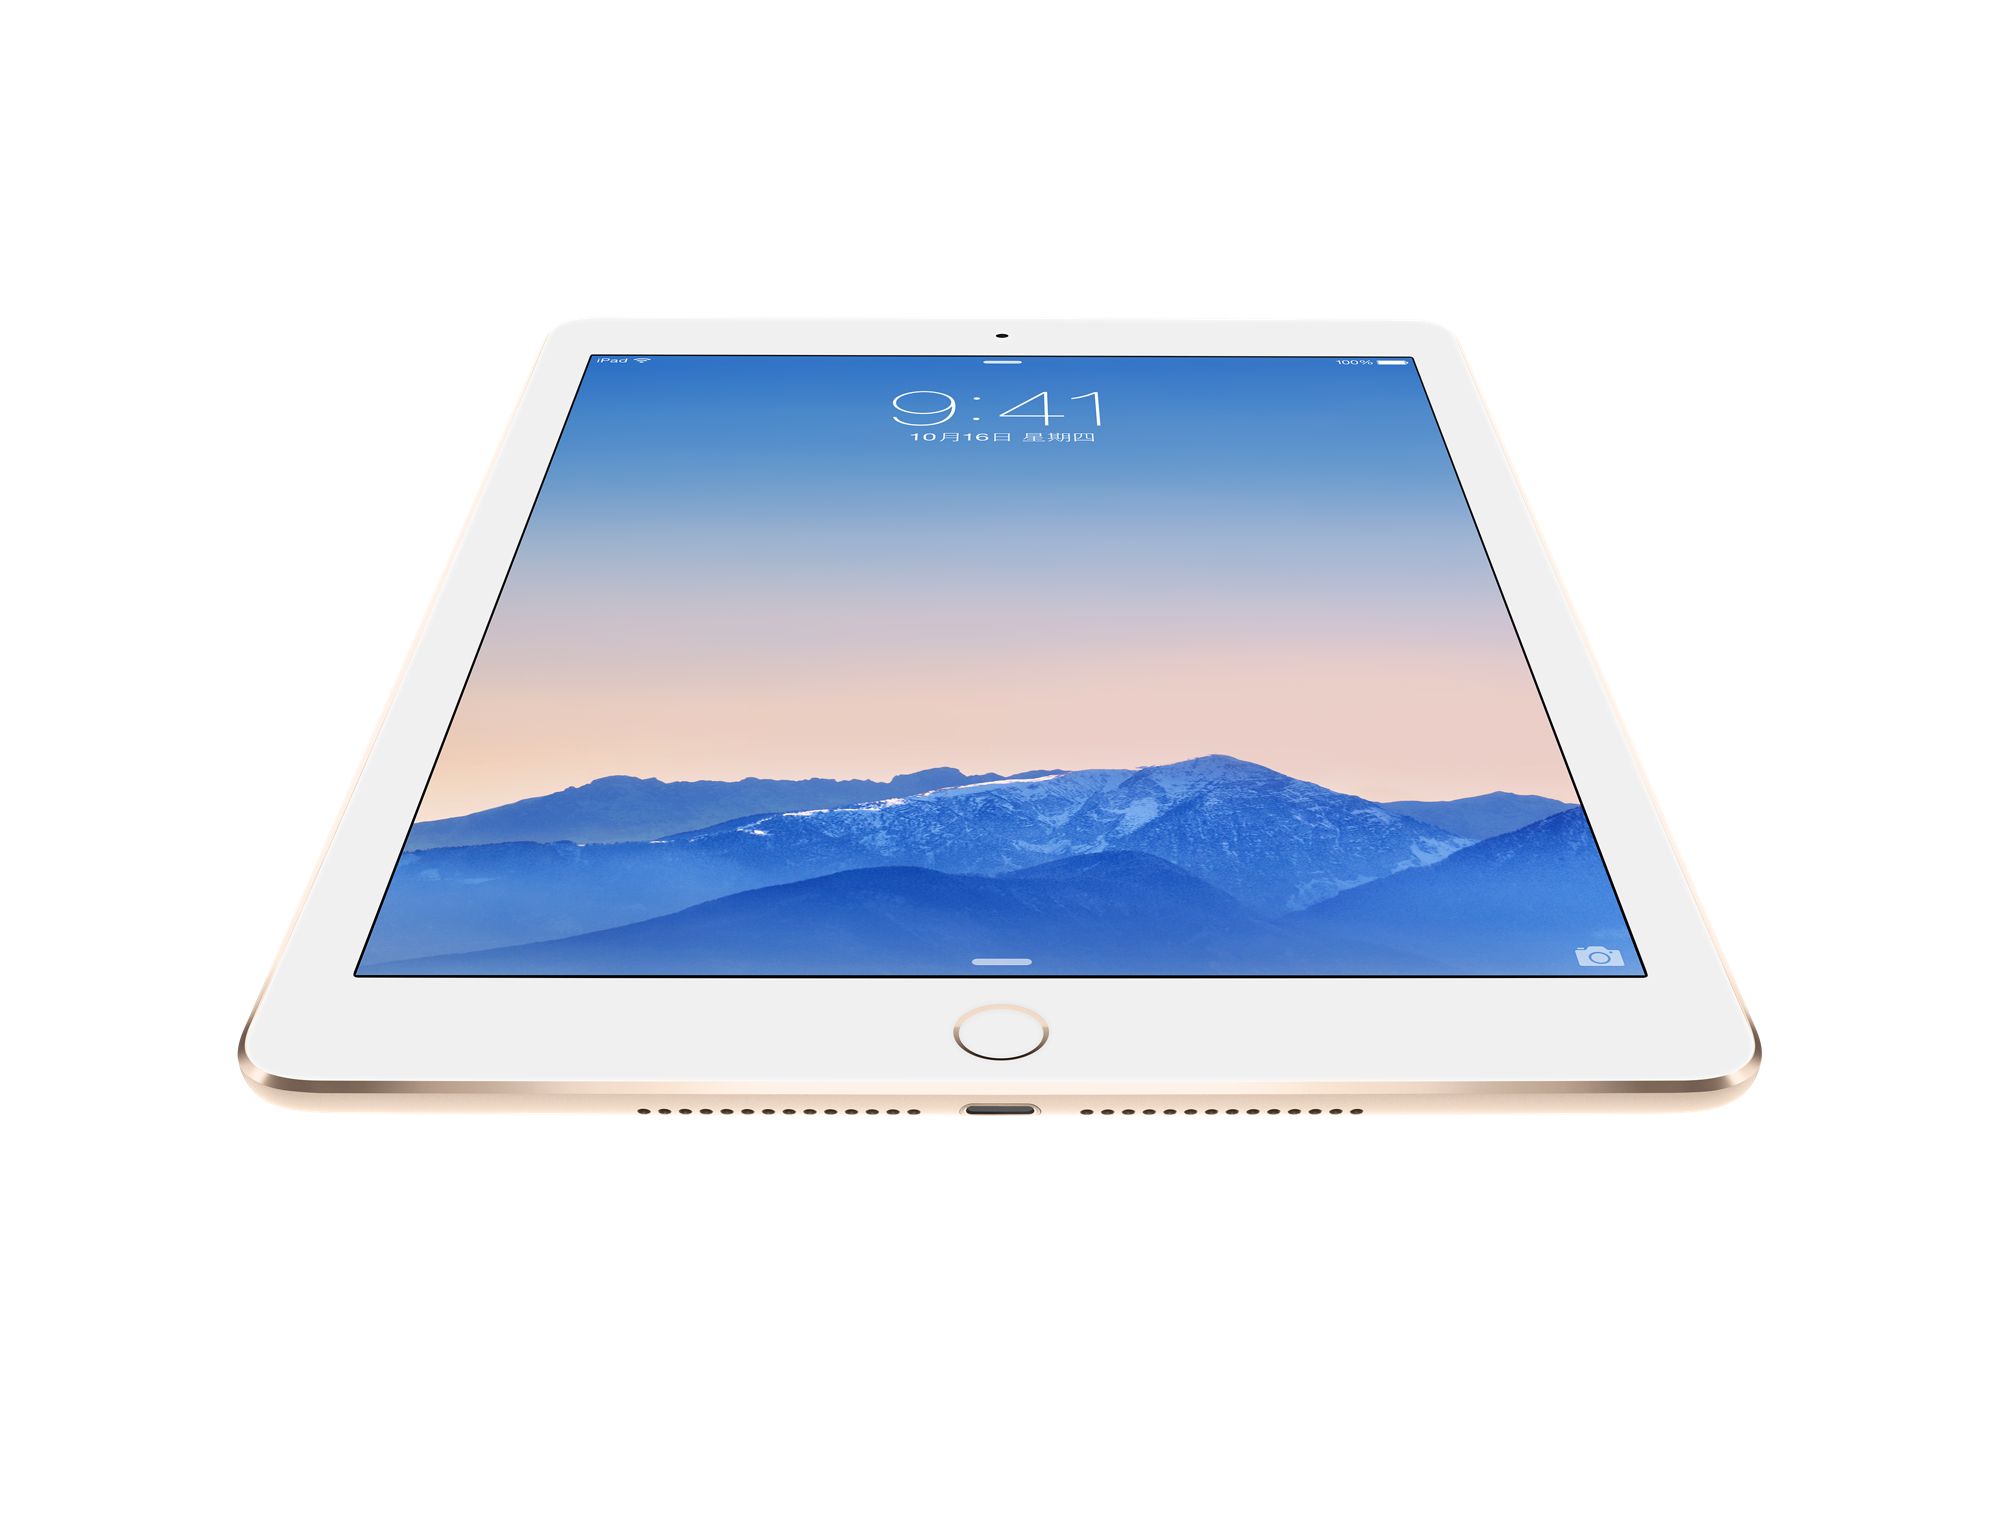 ipad air2价格_iPad Air2/mini3全球价格对比 - 爱问频道 - 经管之家(原人大经济论坛)